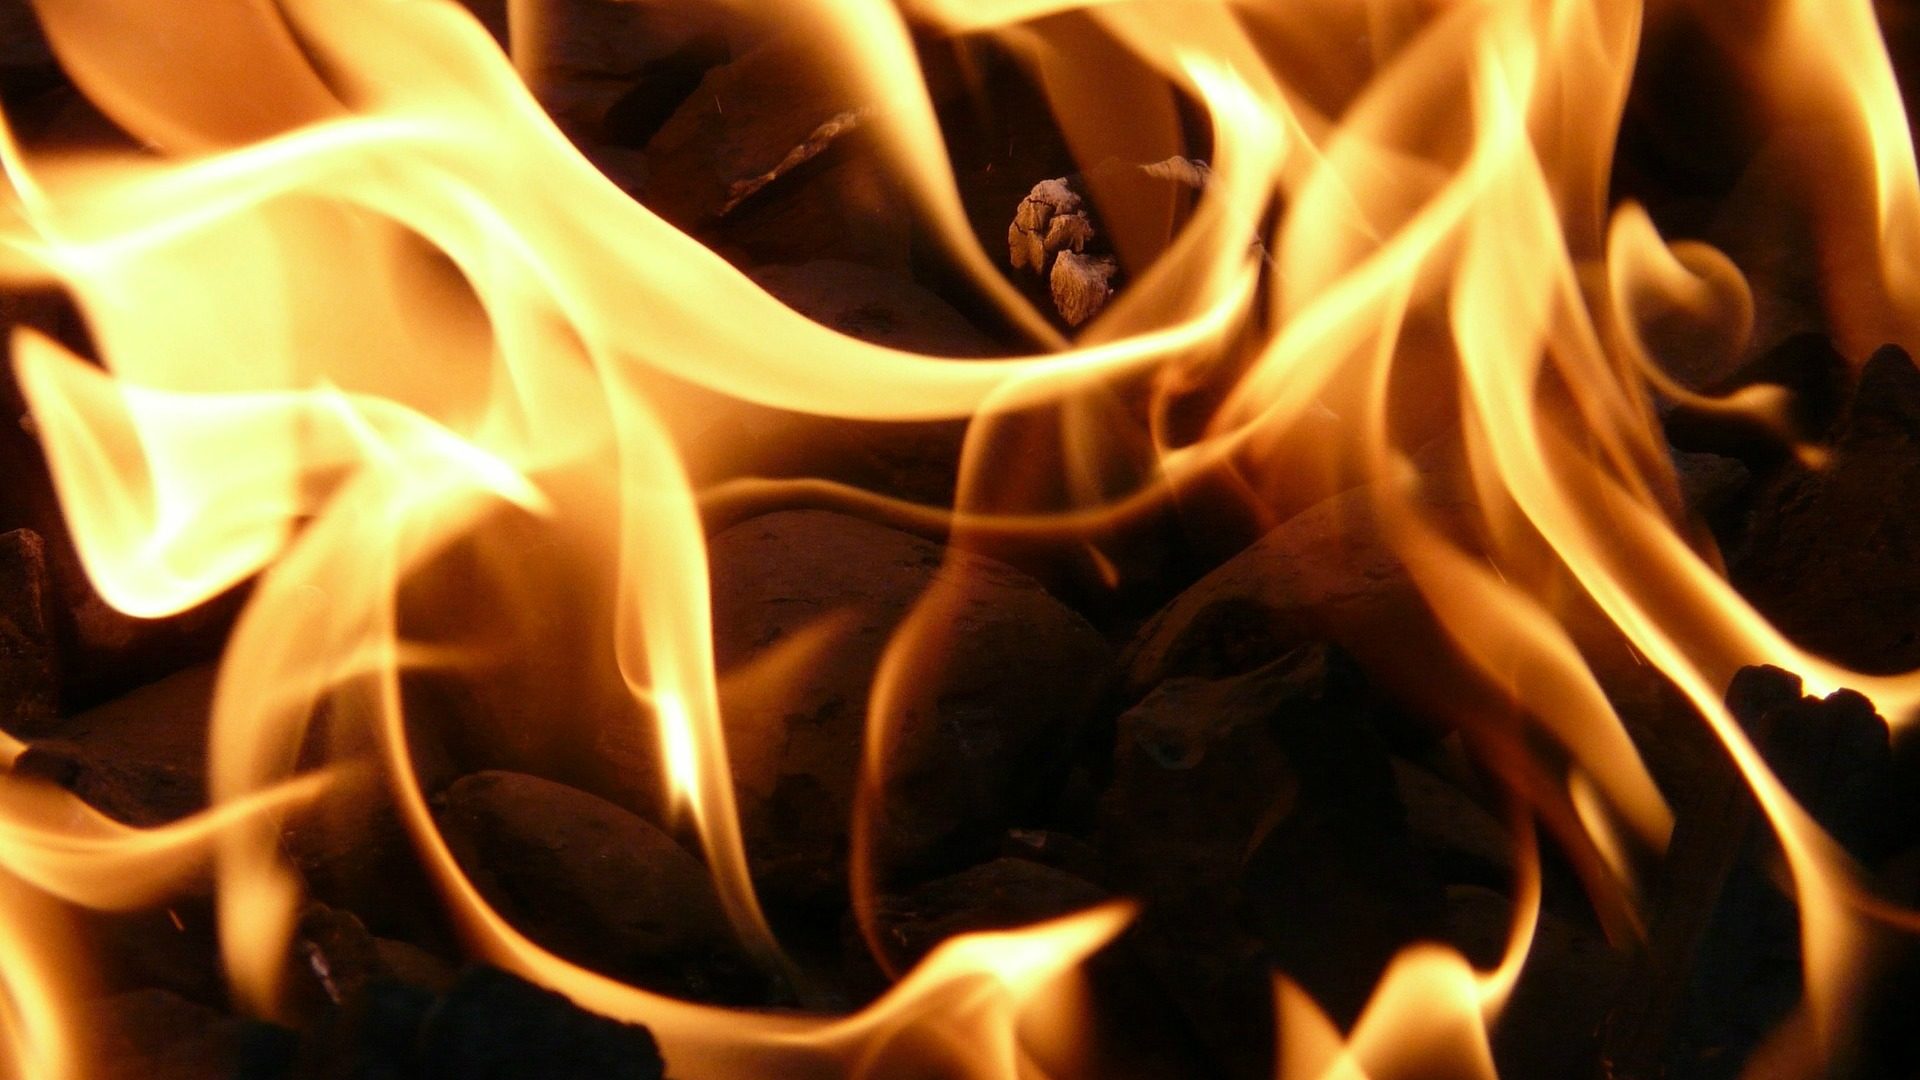 Le feu a détruit entièrement les personnages de la crèche (Photo d'illustration:Pixabay.com)